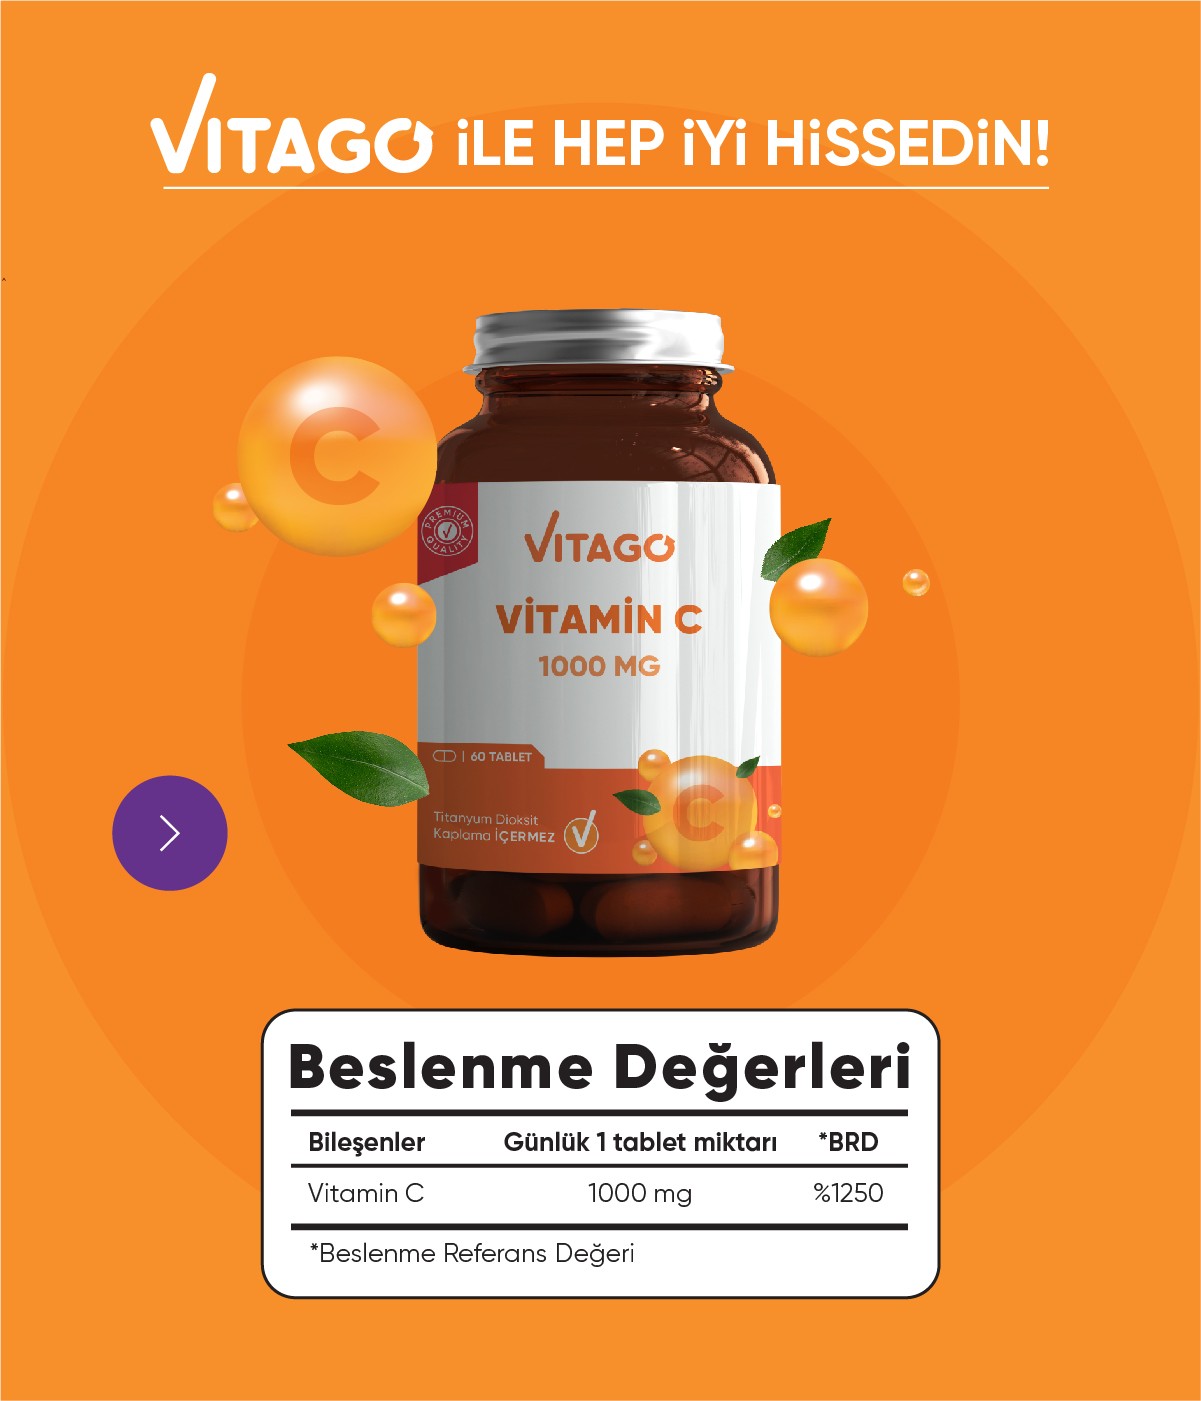 Vitago Premium Vitamin C 1000 MG İçeren Tablet Takviye Edici Gıda 60'lı